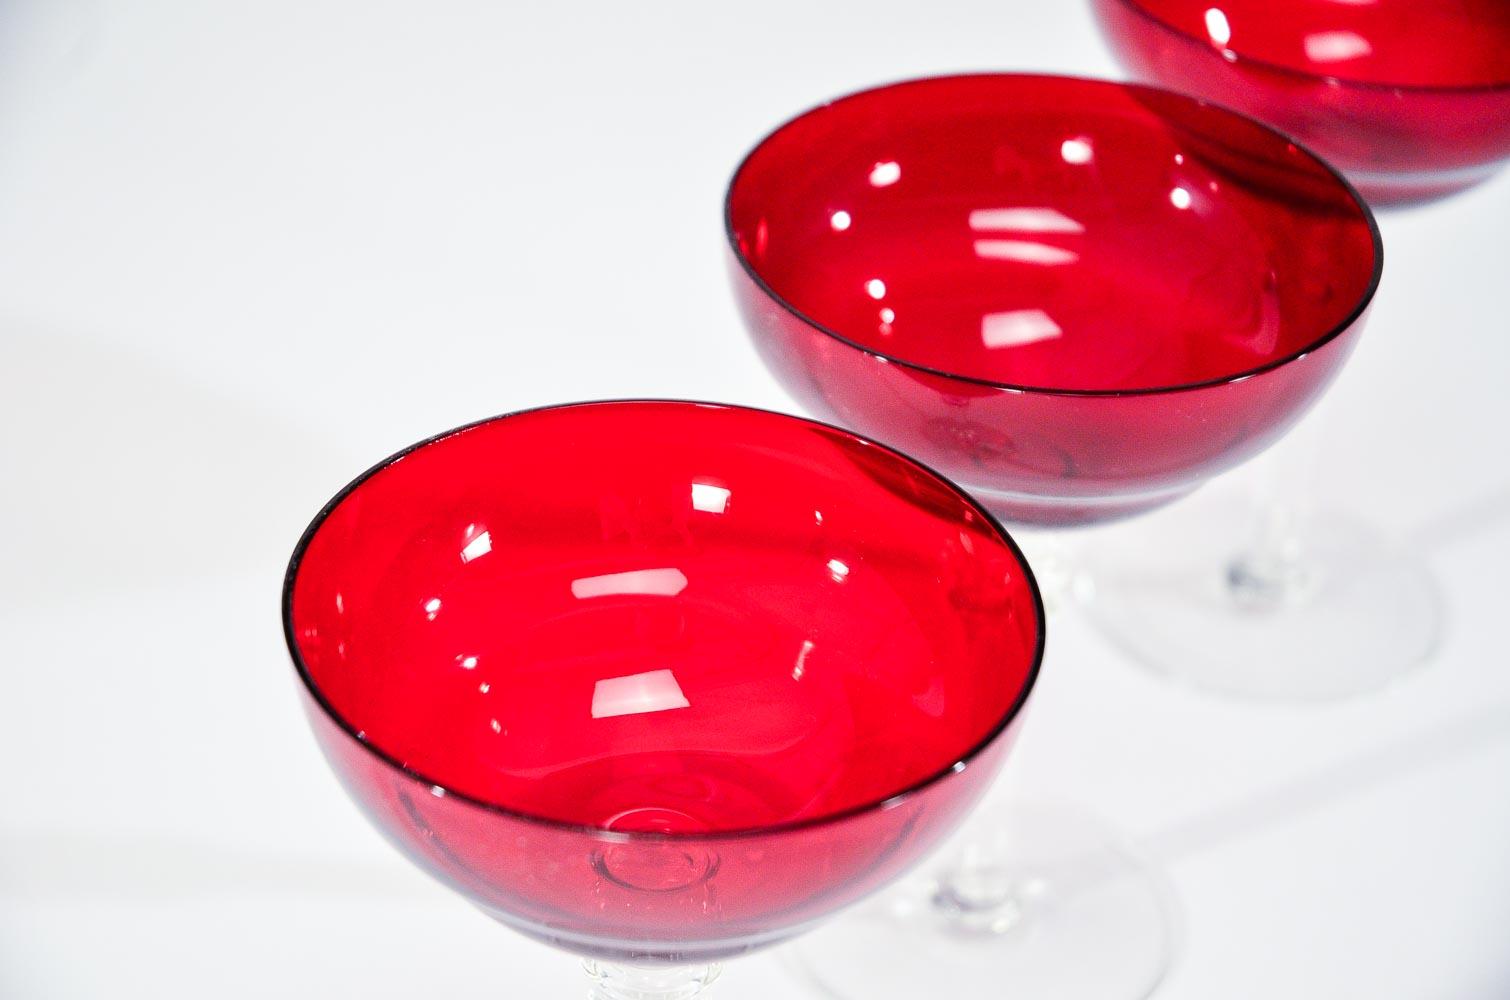 Dieses Set aus 12 Martini-/Champagnerbechern hat die perfekte Größe und Form für Ihren Lieblingscocktail, der in einem leuchtend rubinroten Glas serviert wird. Der gegossene, klare Stiel und die ungewöhnliche Form erinnern an die Zeit des Art déco